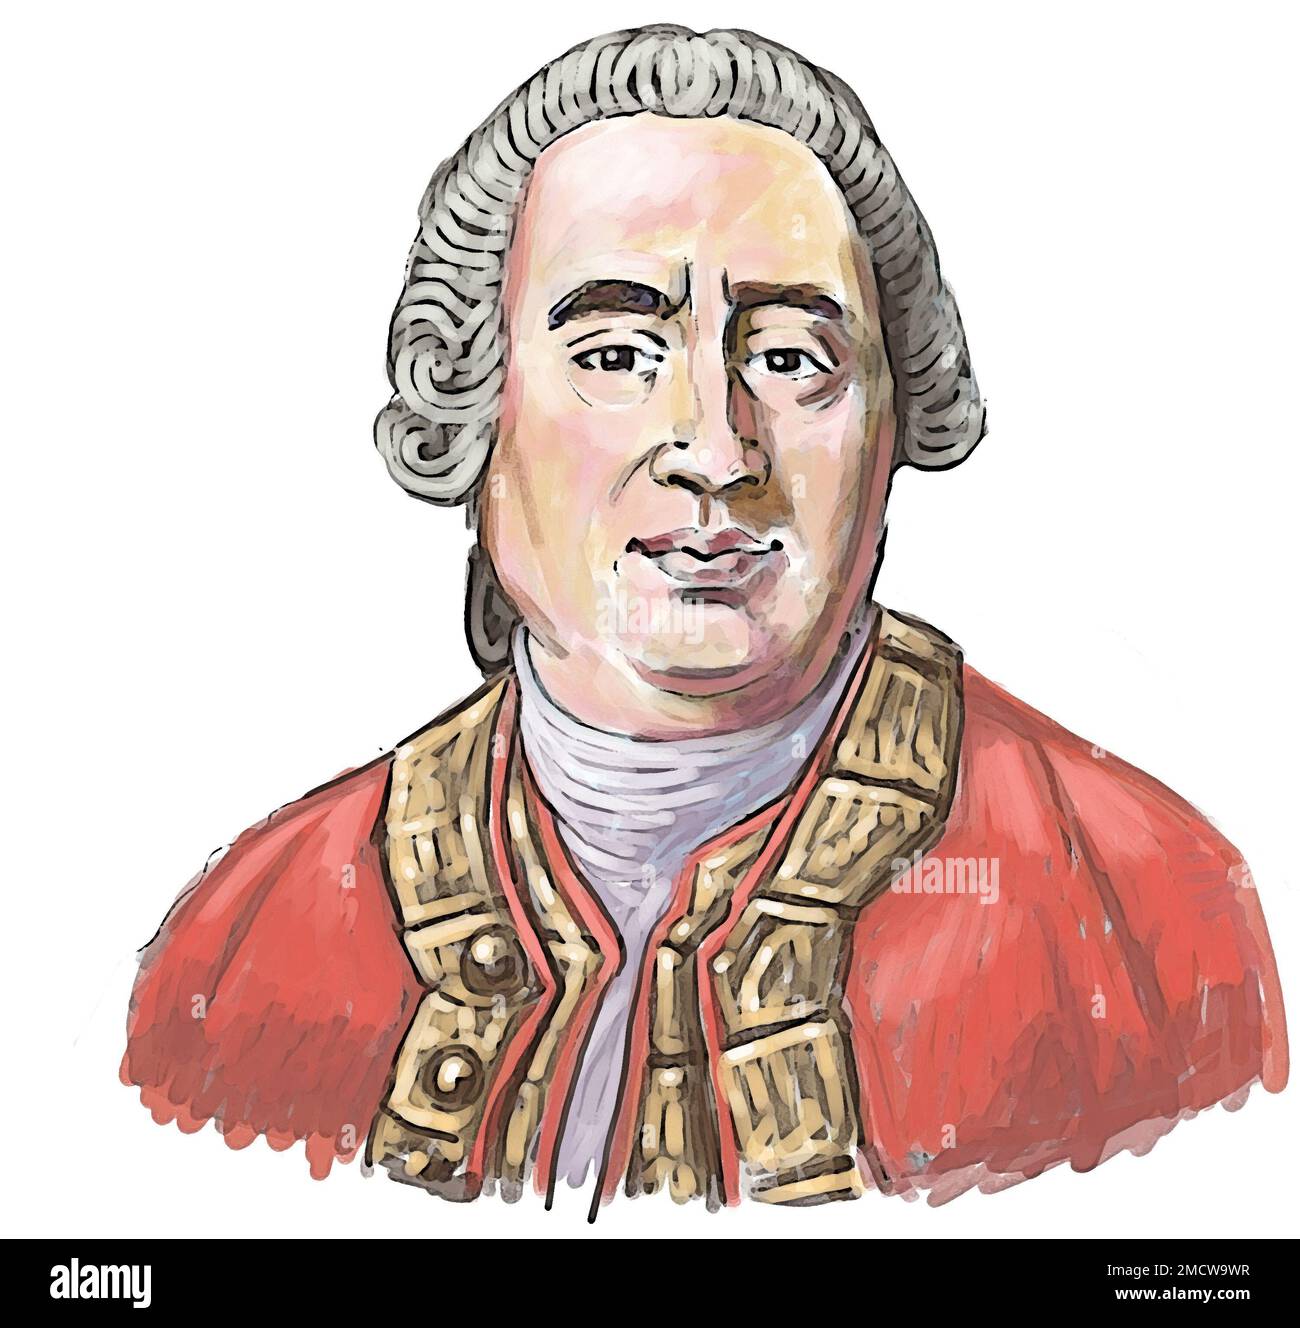 Kunstporträt des schottischen Aufklärungsphilosophen, Historikers und Ökonomen David Hume, bekannt für philosophischen Empiriismus, Skepsis und Naturalismus. Stockfoto